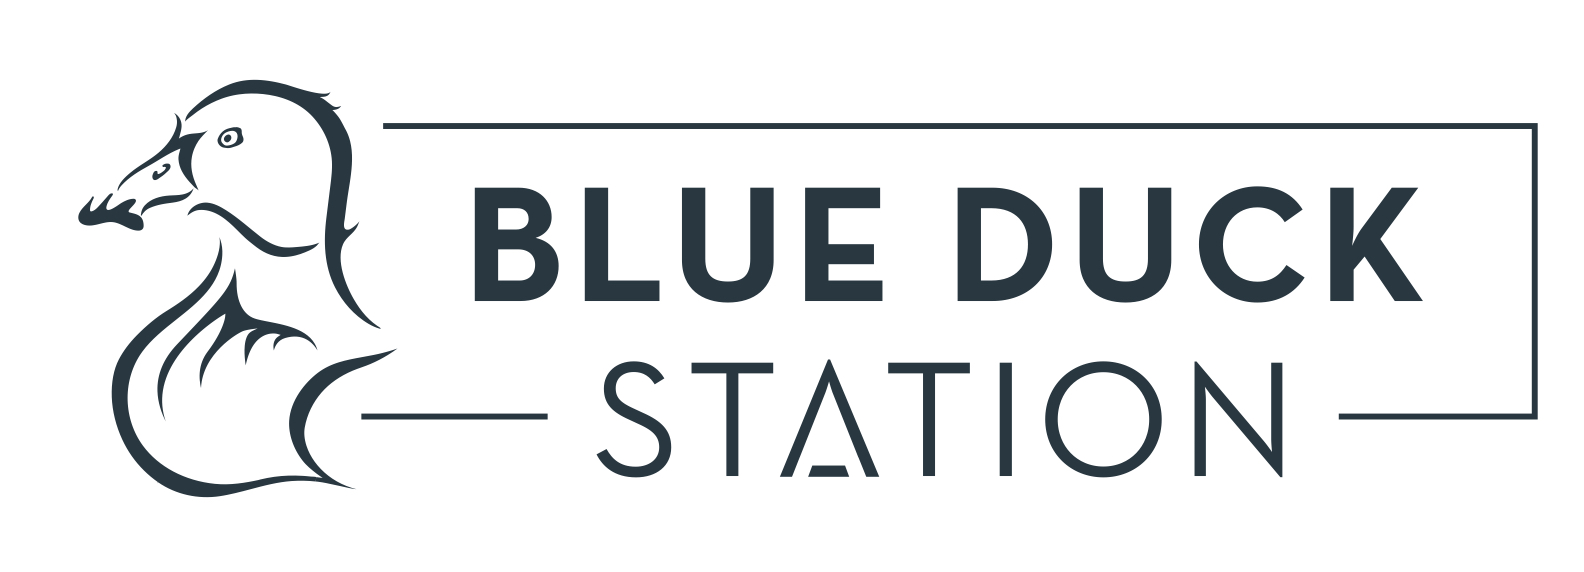 Blue-Duck-Station-logo.jpg